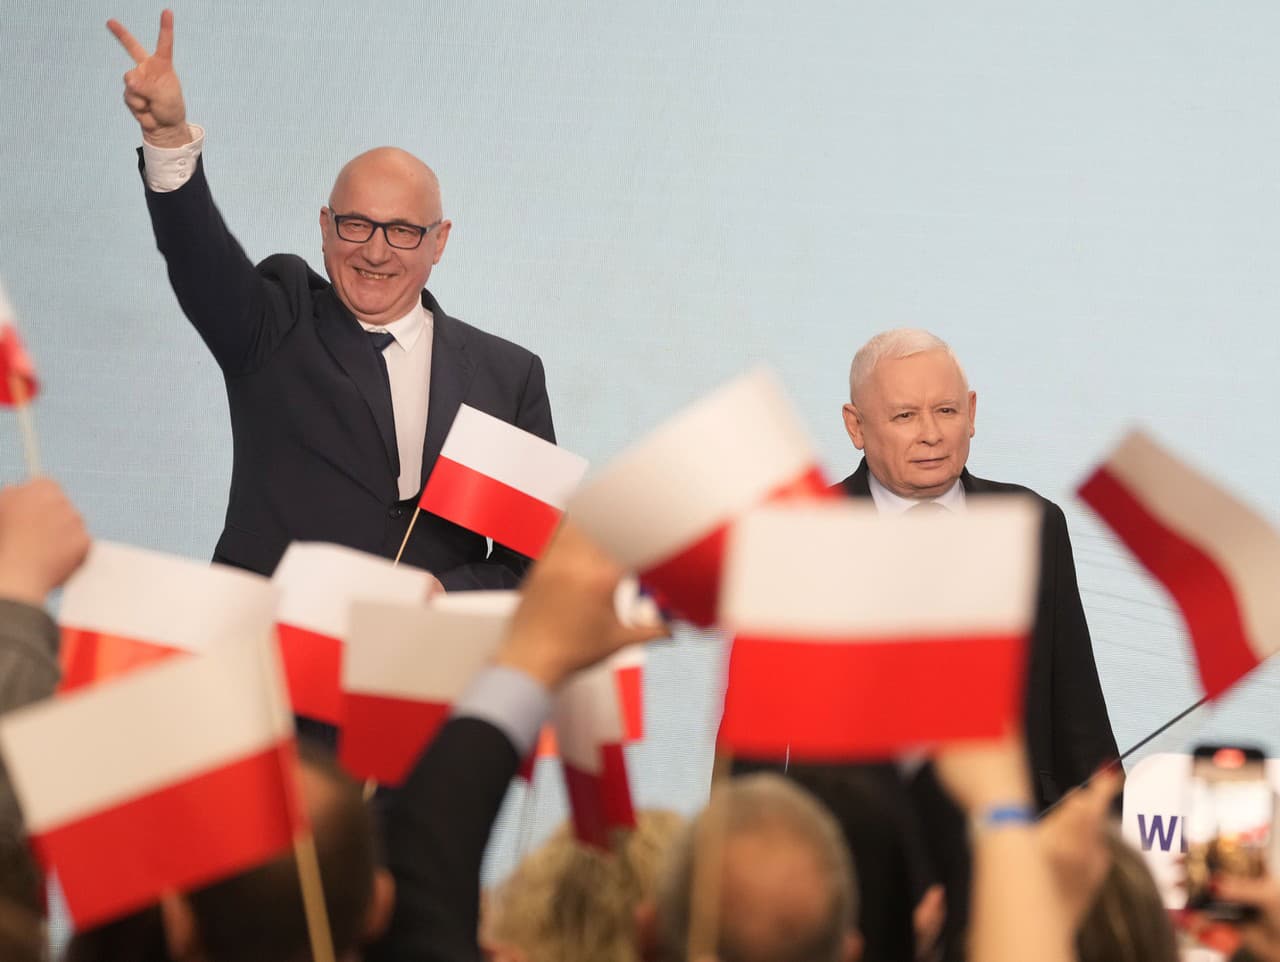 Predseda opozičnej konzervatívnej strany Právo a spravodlivosť (PiS) Jaroslaw Kaczynski (vpravo) oslavuje víťazstvo v komunálnych voľbách vo Varšave